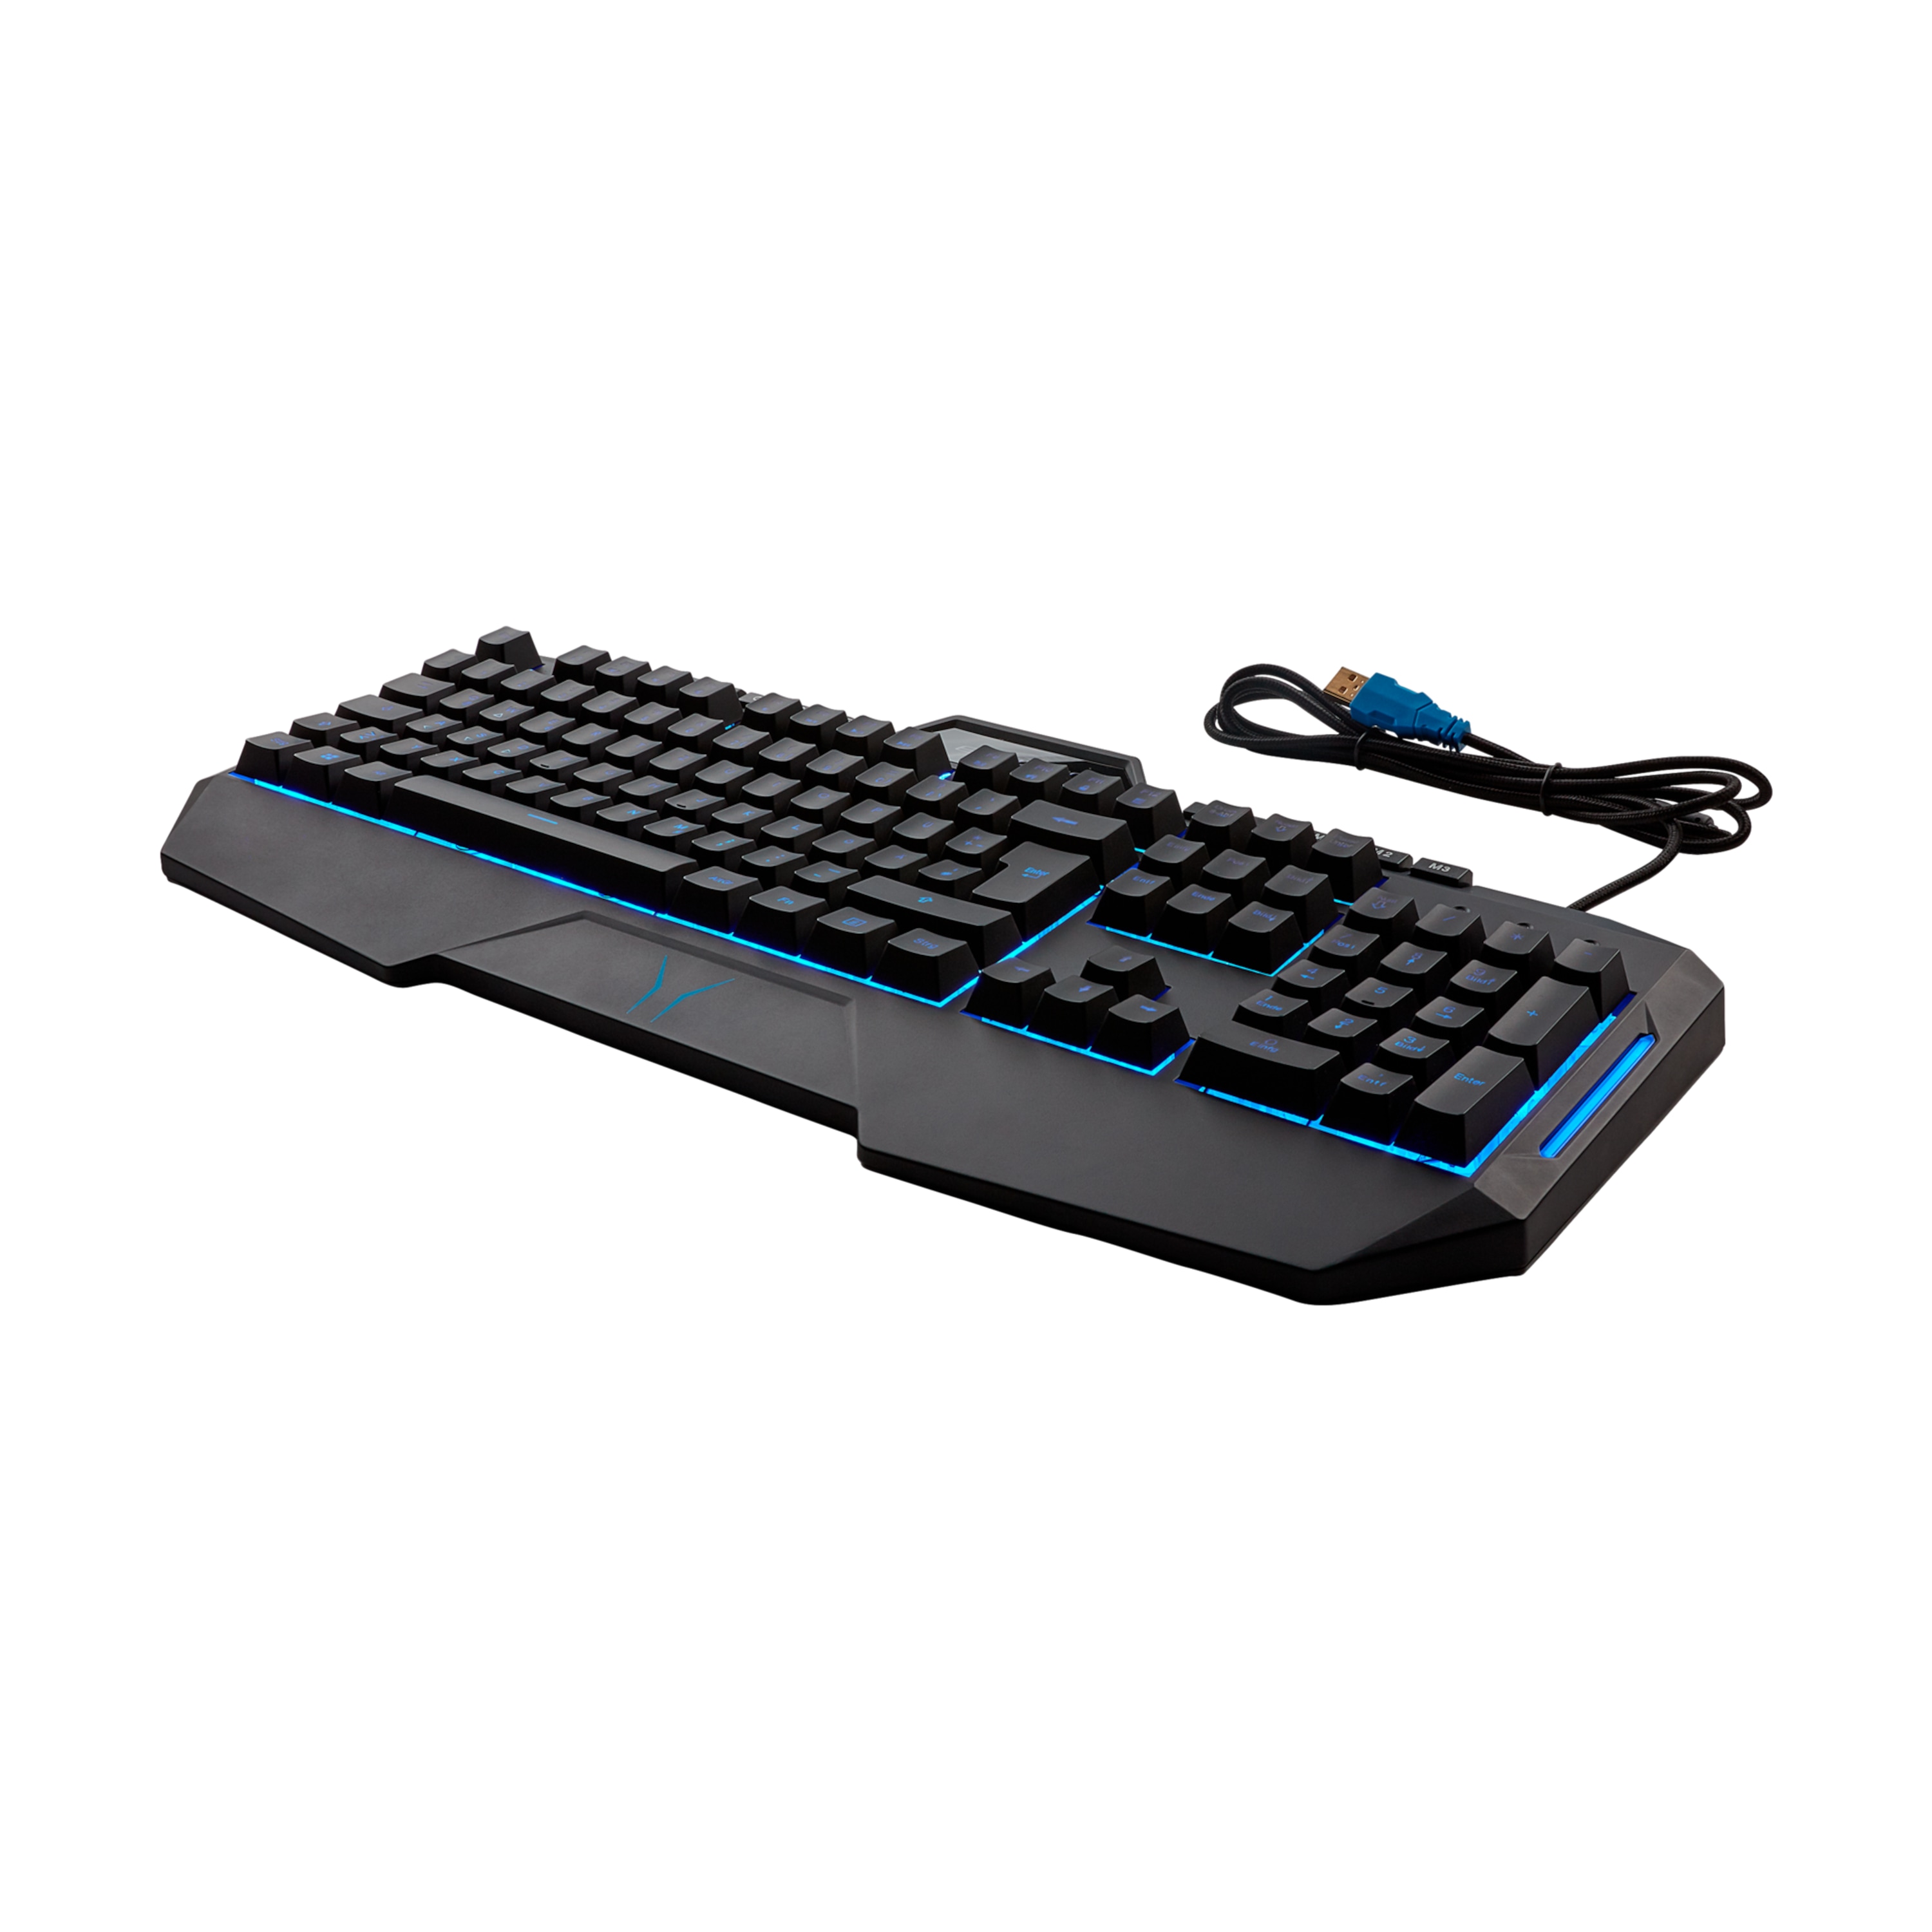 MEDION® ERAZER® X81200 Semi-Mechanische Gaming Tastatur, präziser und definierter Tastenhub mit Klick, Makrotasten, Anti-Ghosting, stoffumanteltes USB-Kabel. Hintergrundbeleuchtung mit 7 Farben